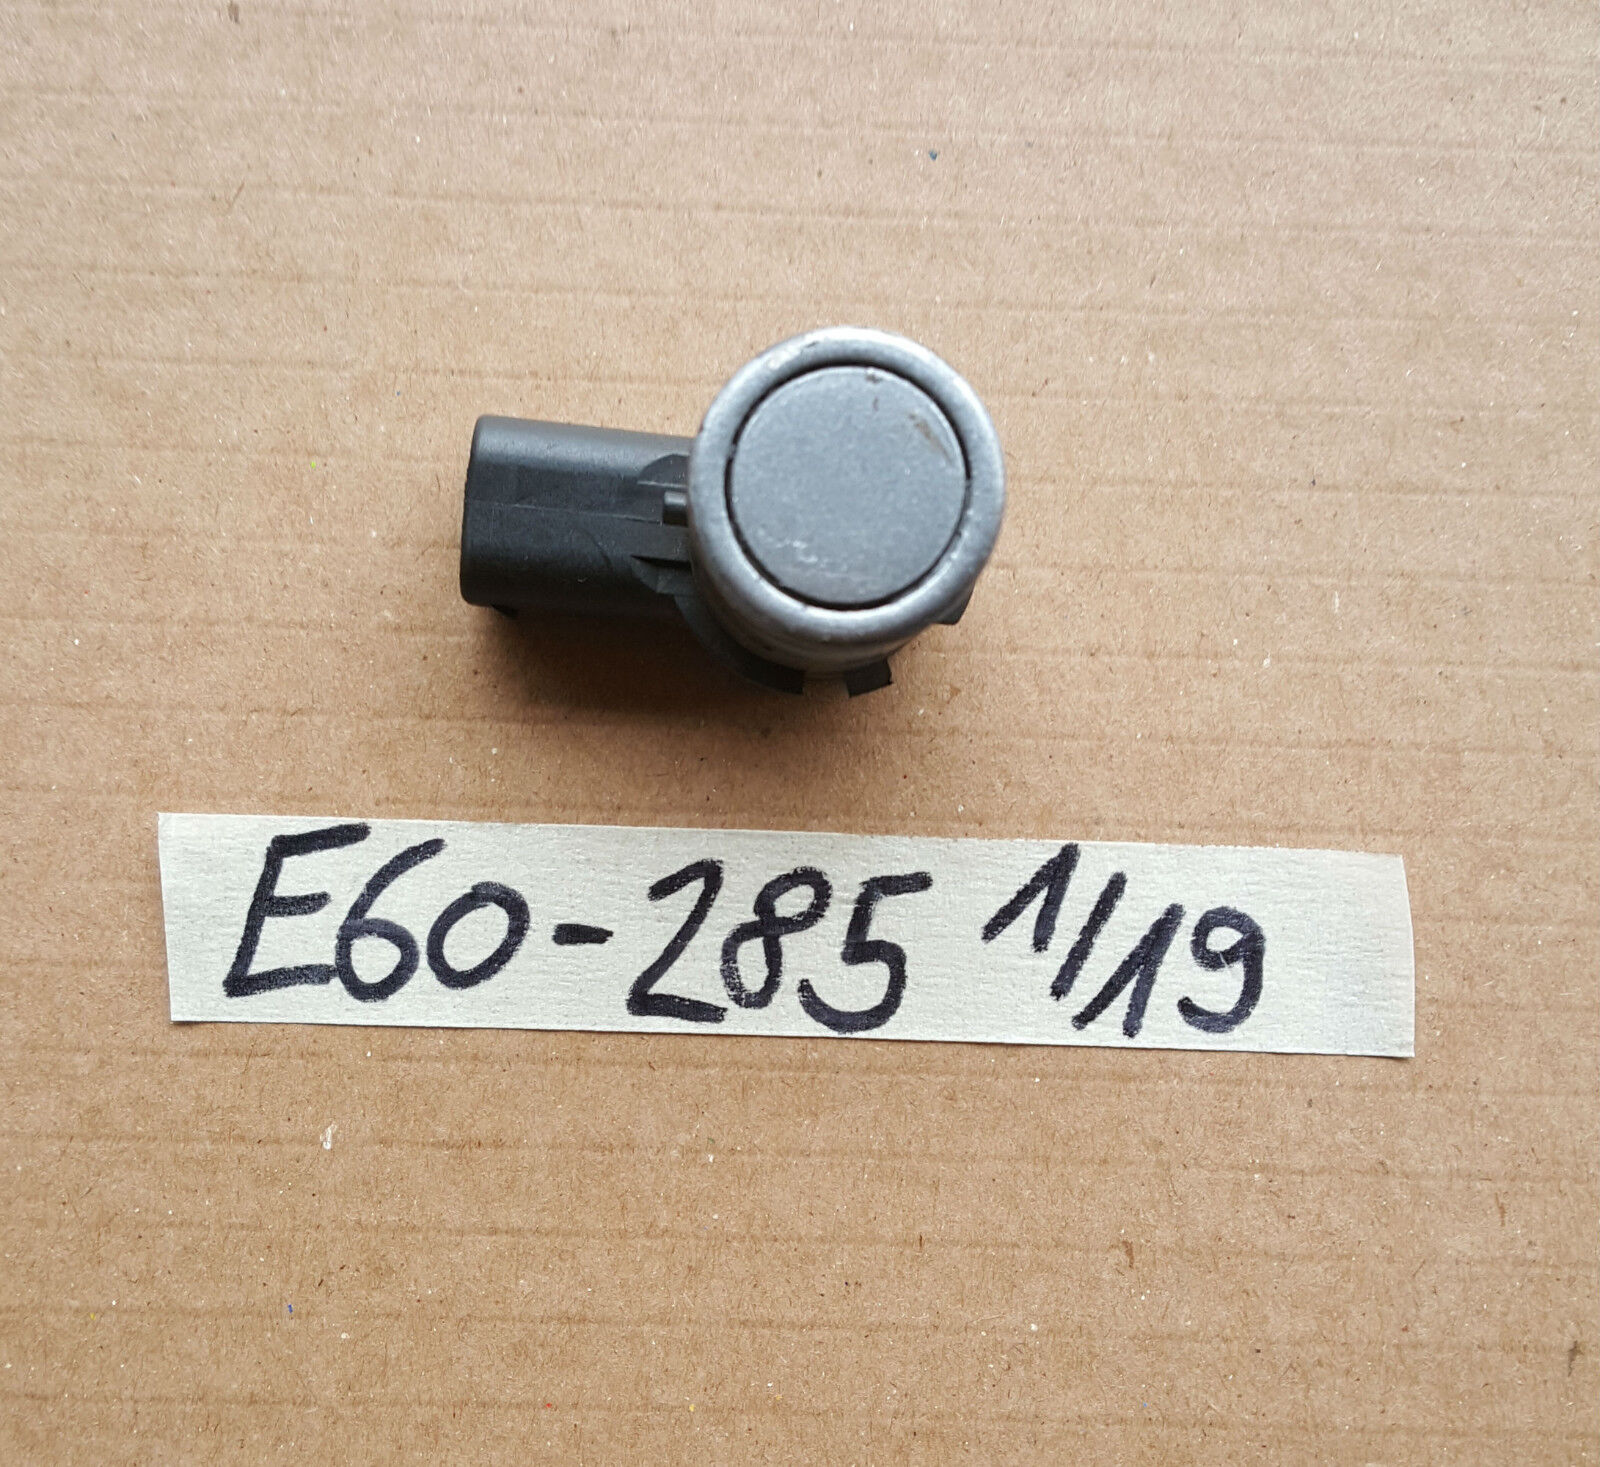 BMW E60 E61 PDC Rückfahr Sensor 6938742 Ultraschallwandler silber grau metallic